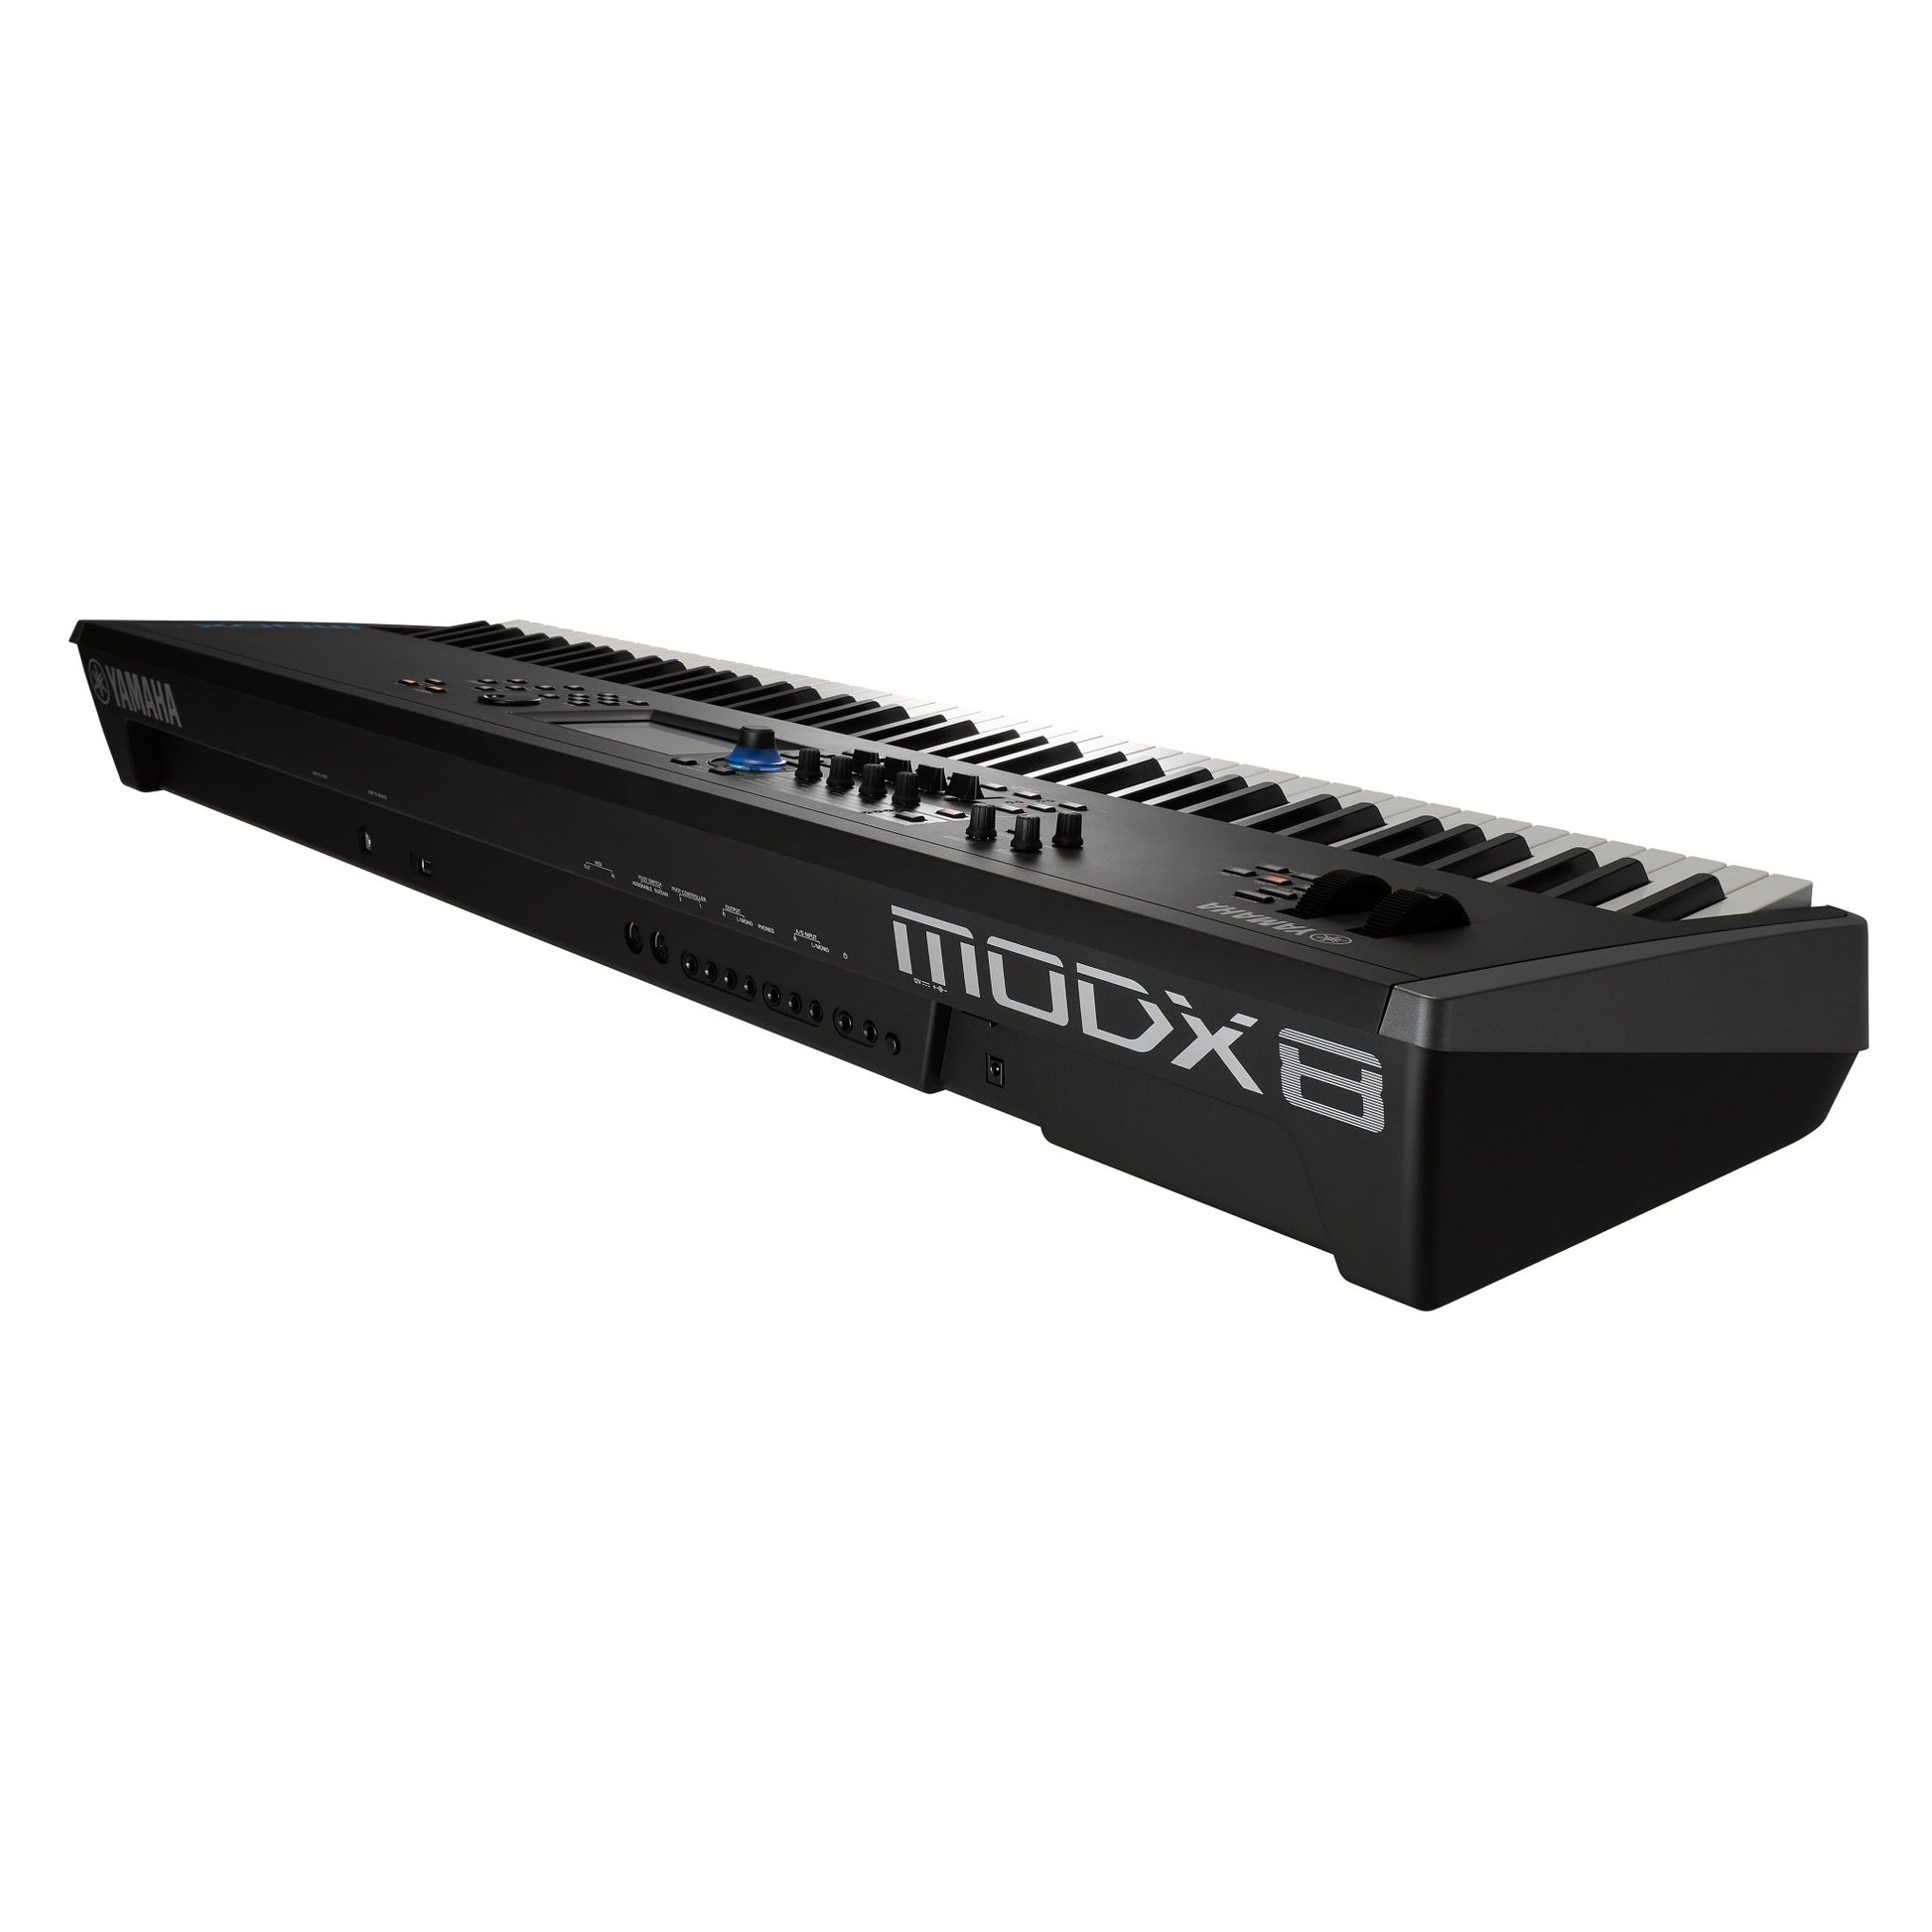 Yamaha MODX8 88-key Weighted Action Synthesizer - Leitz Music-818259745869-MODx8